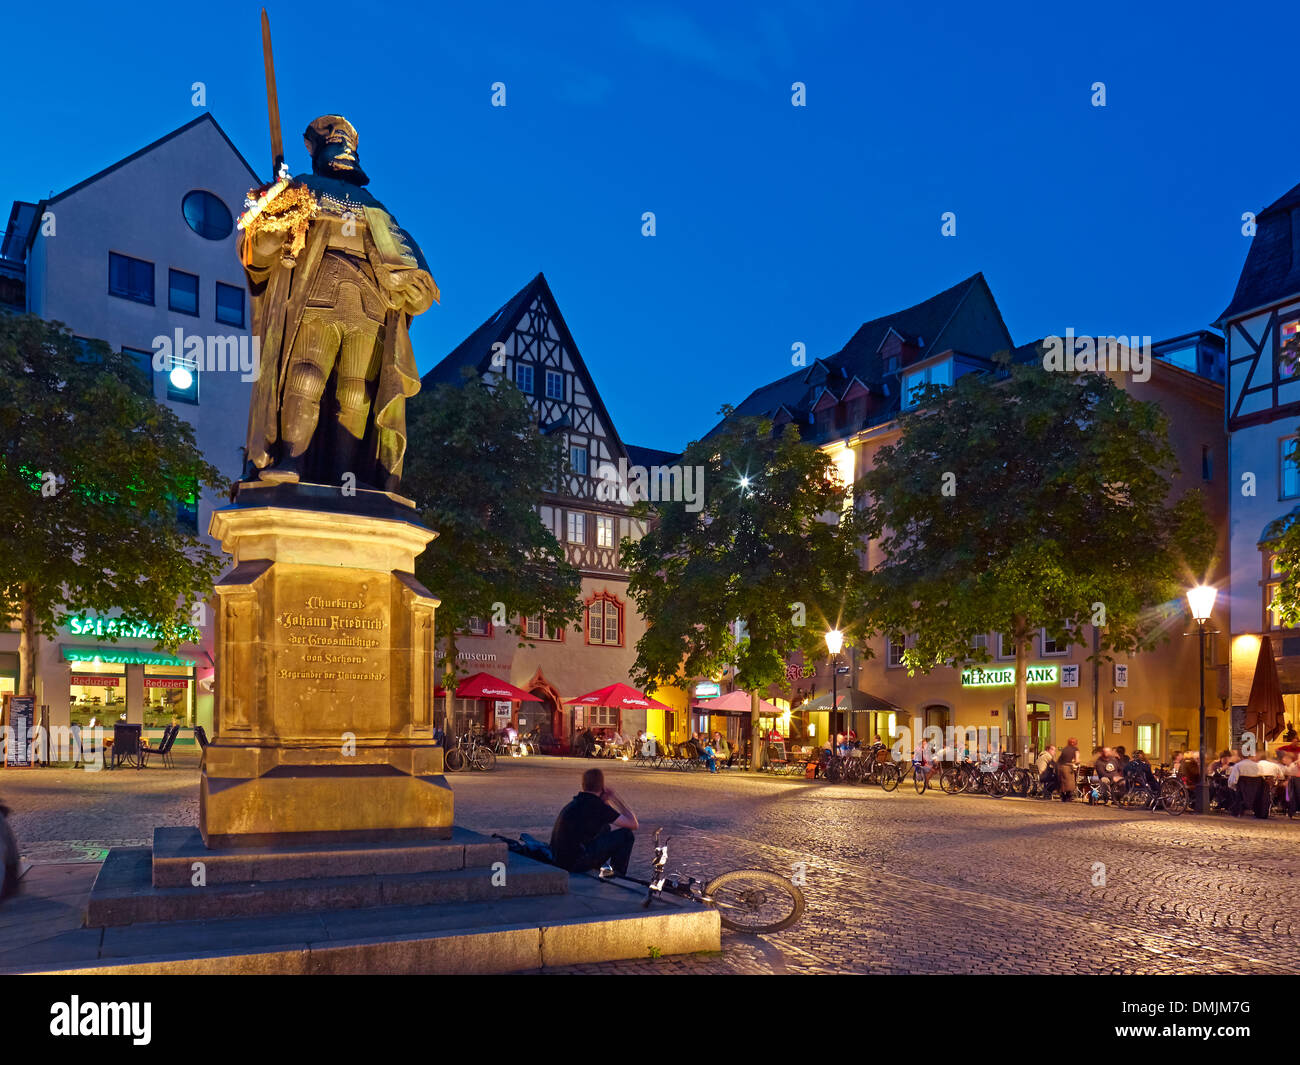 Denkmal für Johann Friedrich der großmütige auf dem Marktplatz in Jena, Thüringen, Deutschland Stockfoto